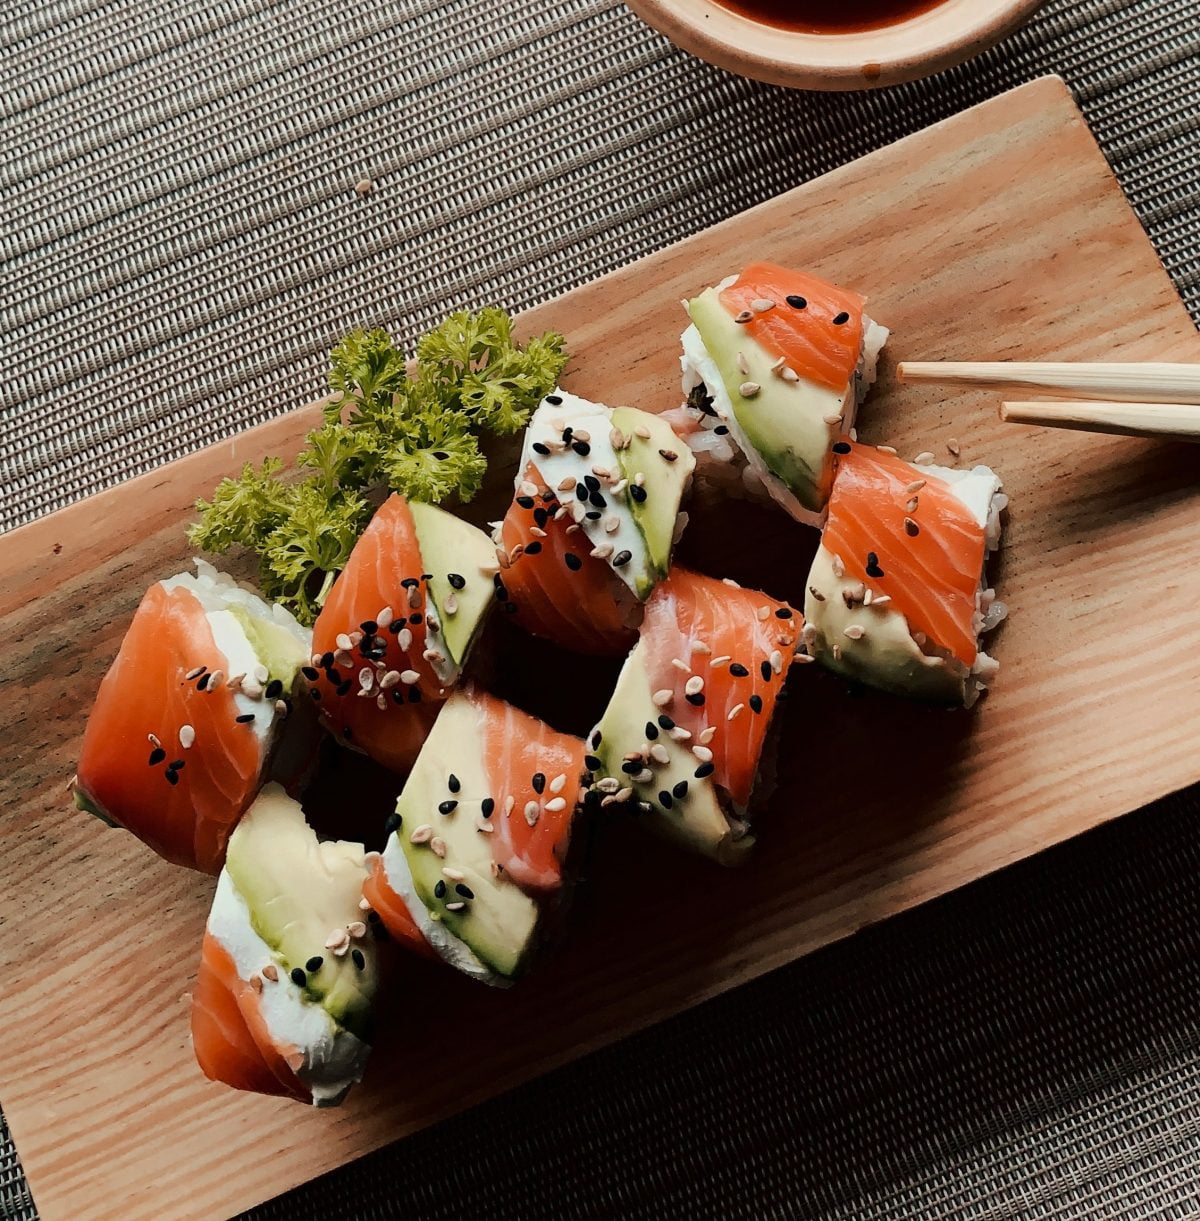 OHO Design, Wieder mal Zeit für Sushi